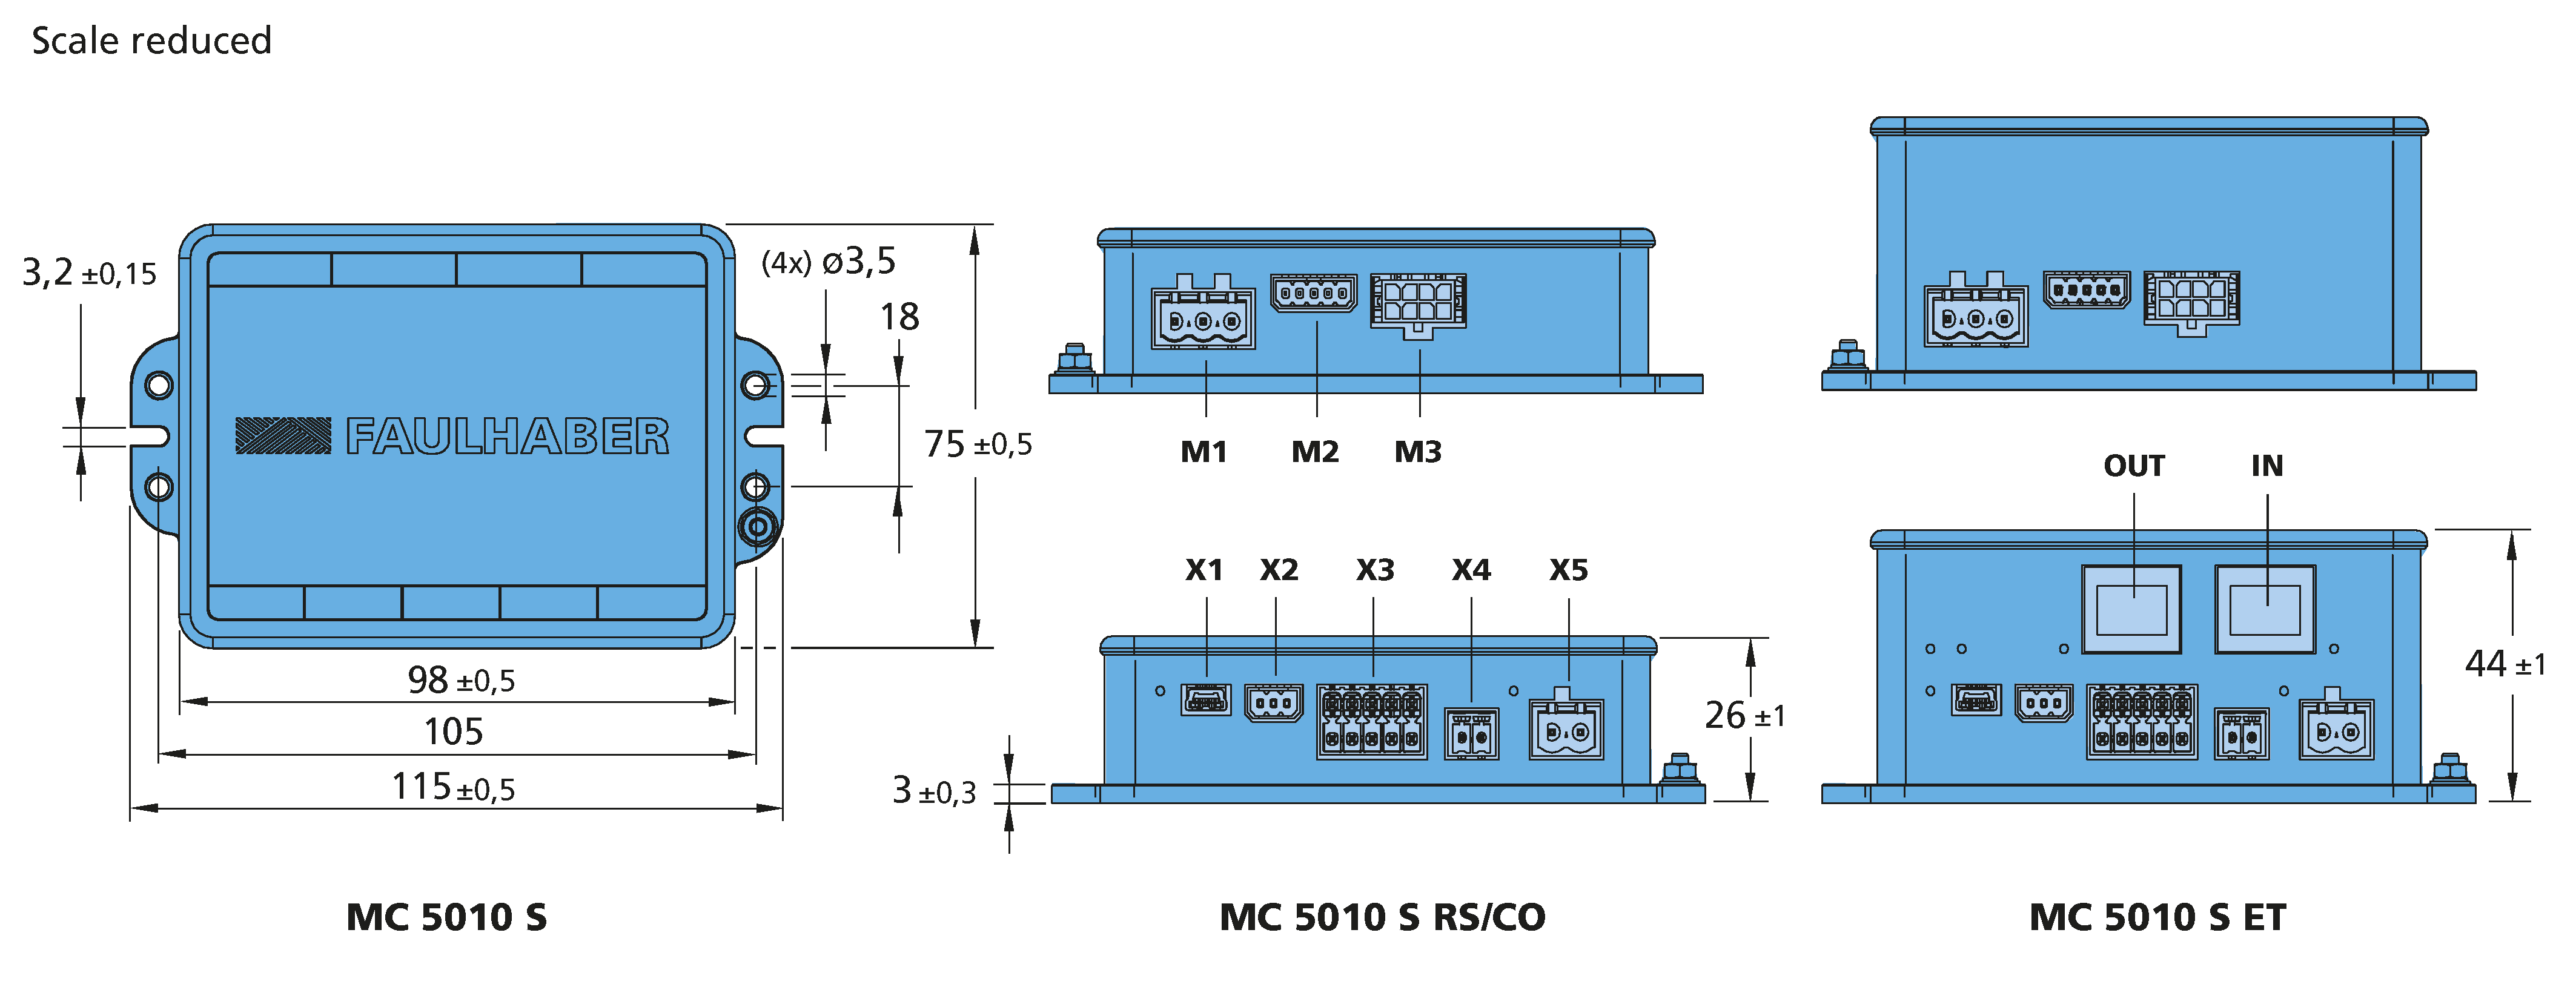 ドライブエレクトロニクス Series MC 5010 S